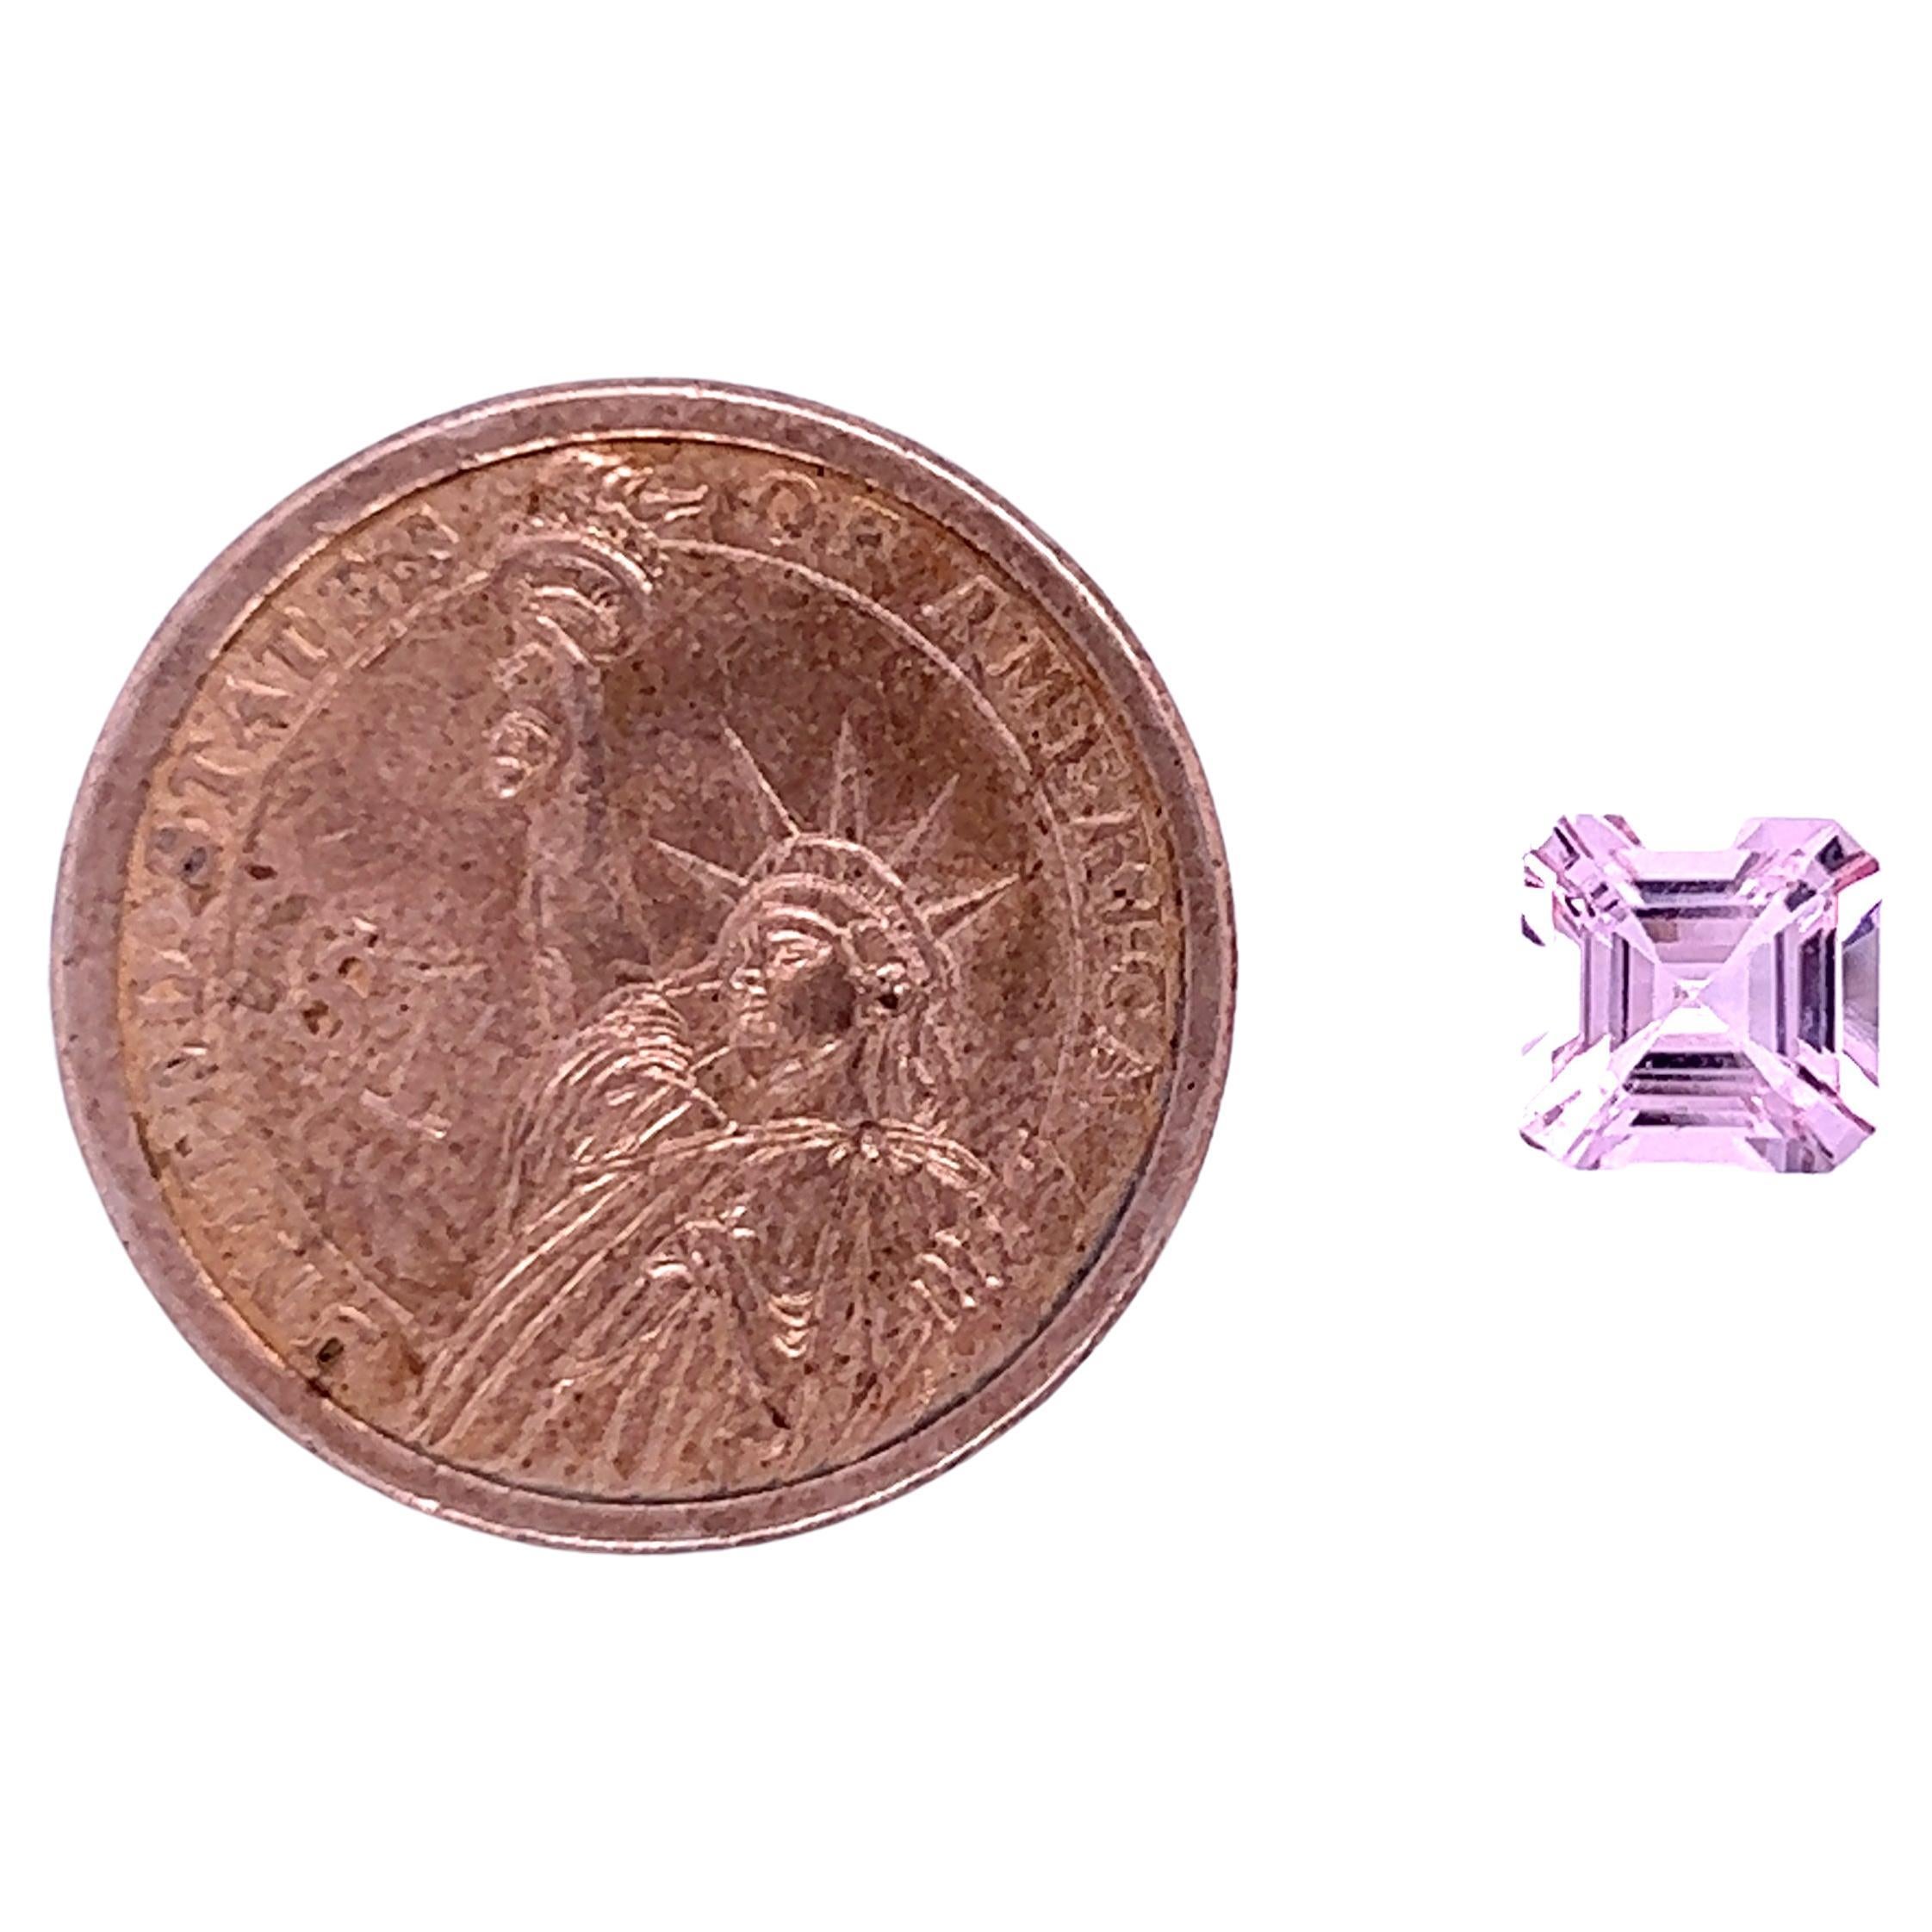 SKU - 50015
Stein : Natürlicher rosa Morganit
Form : Achteck
Klarheit -  Auge sauber
Note -  AAA
Gewicht - 2,24 Karat
Länge * Breite * Höhe - 8,8*8,8*5,8
Preis - $ 1100

Der Morganit ist ein Edelstein, der das Prisma der Liebe in all seinen